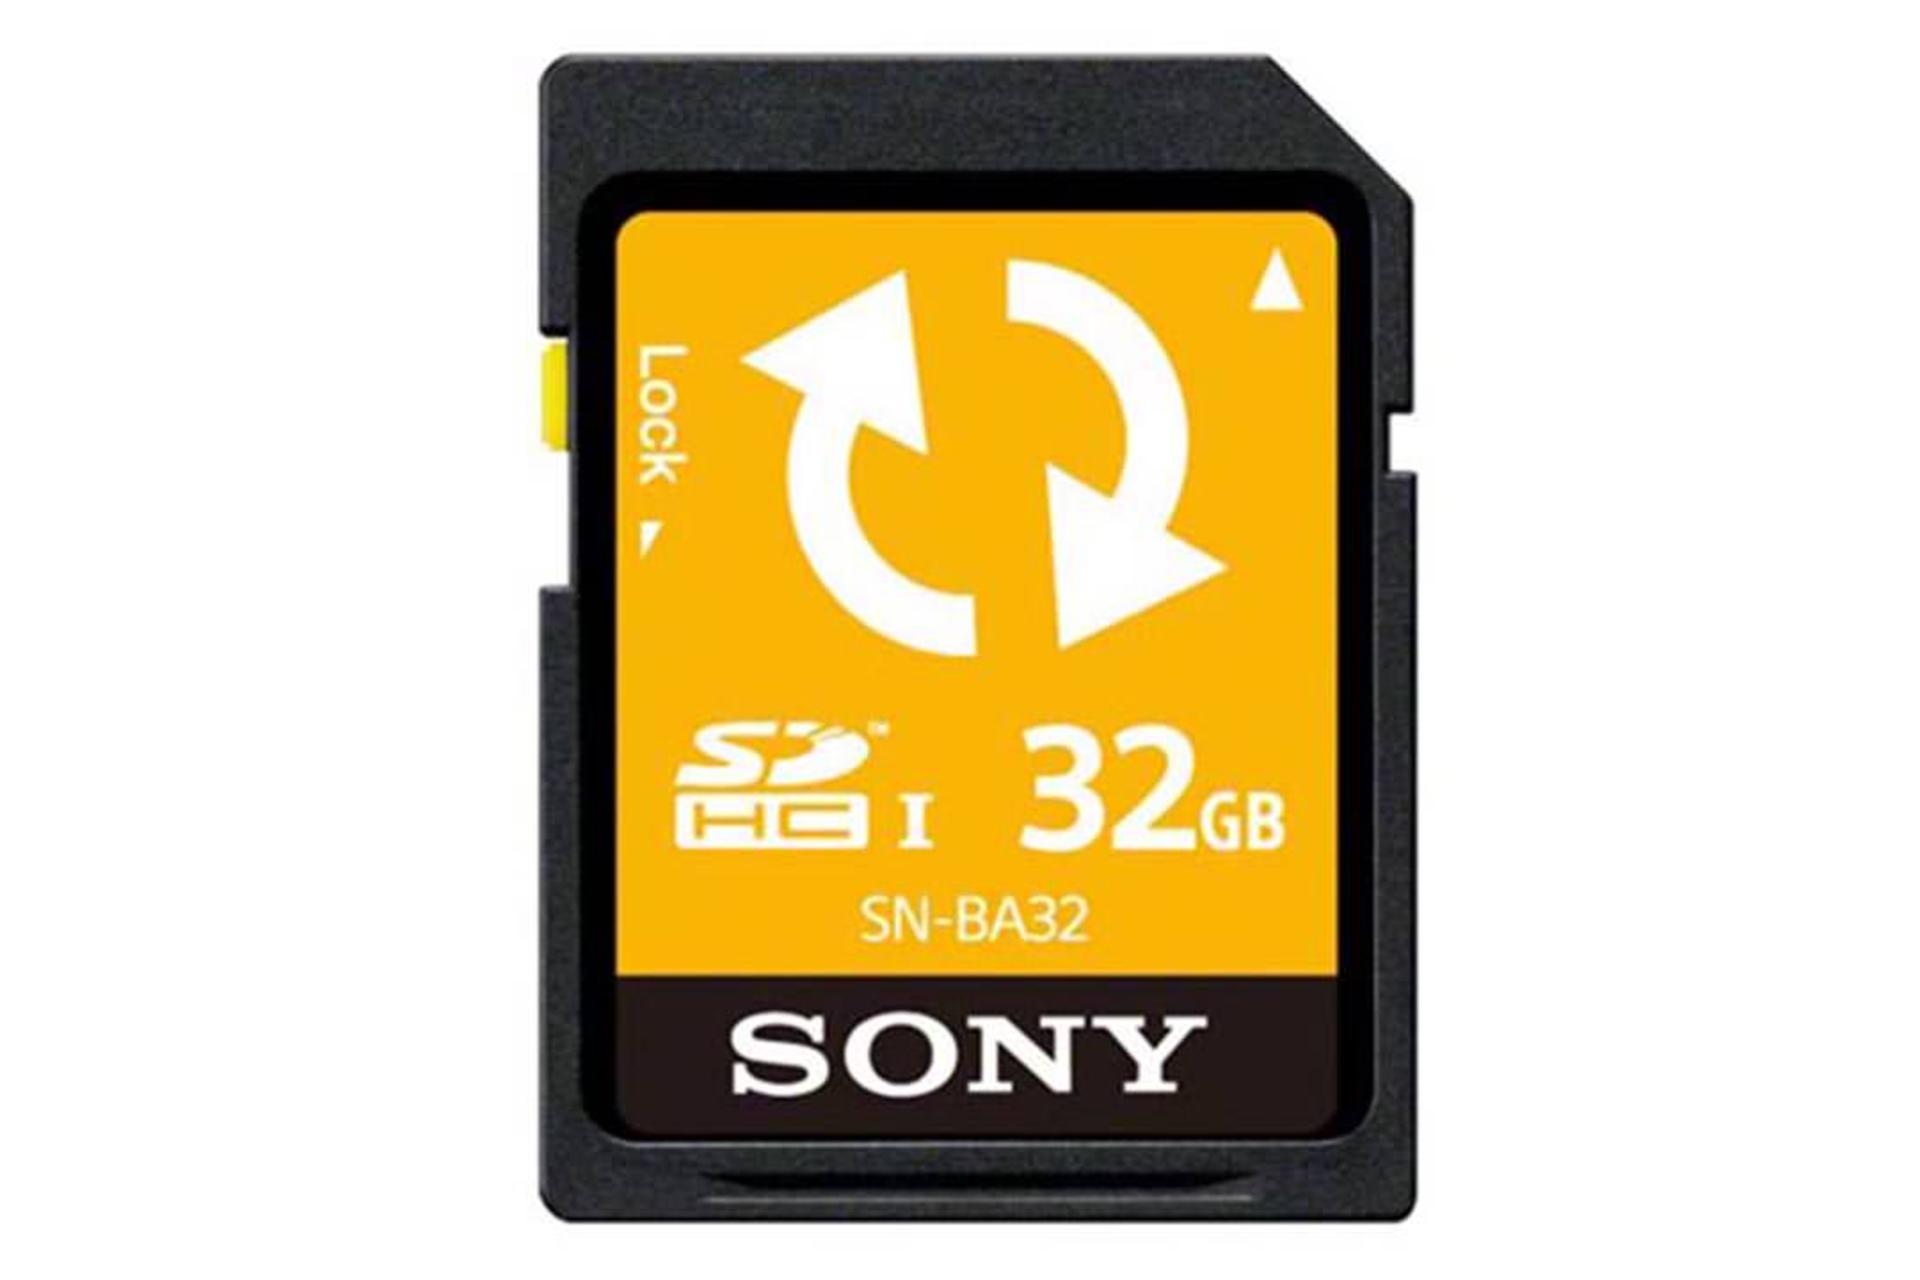 Sony SNBA64 SDHC Class 4 32GB